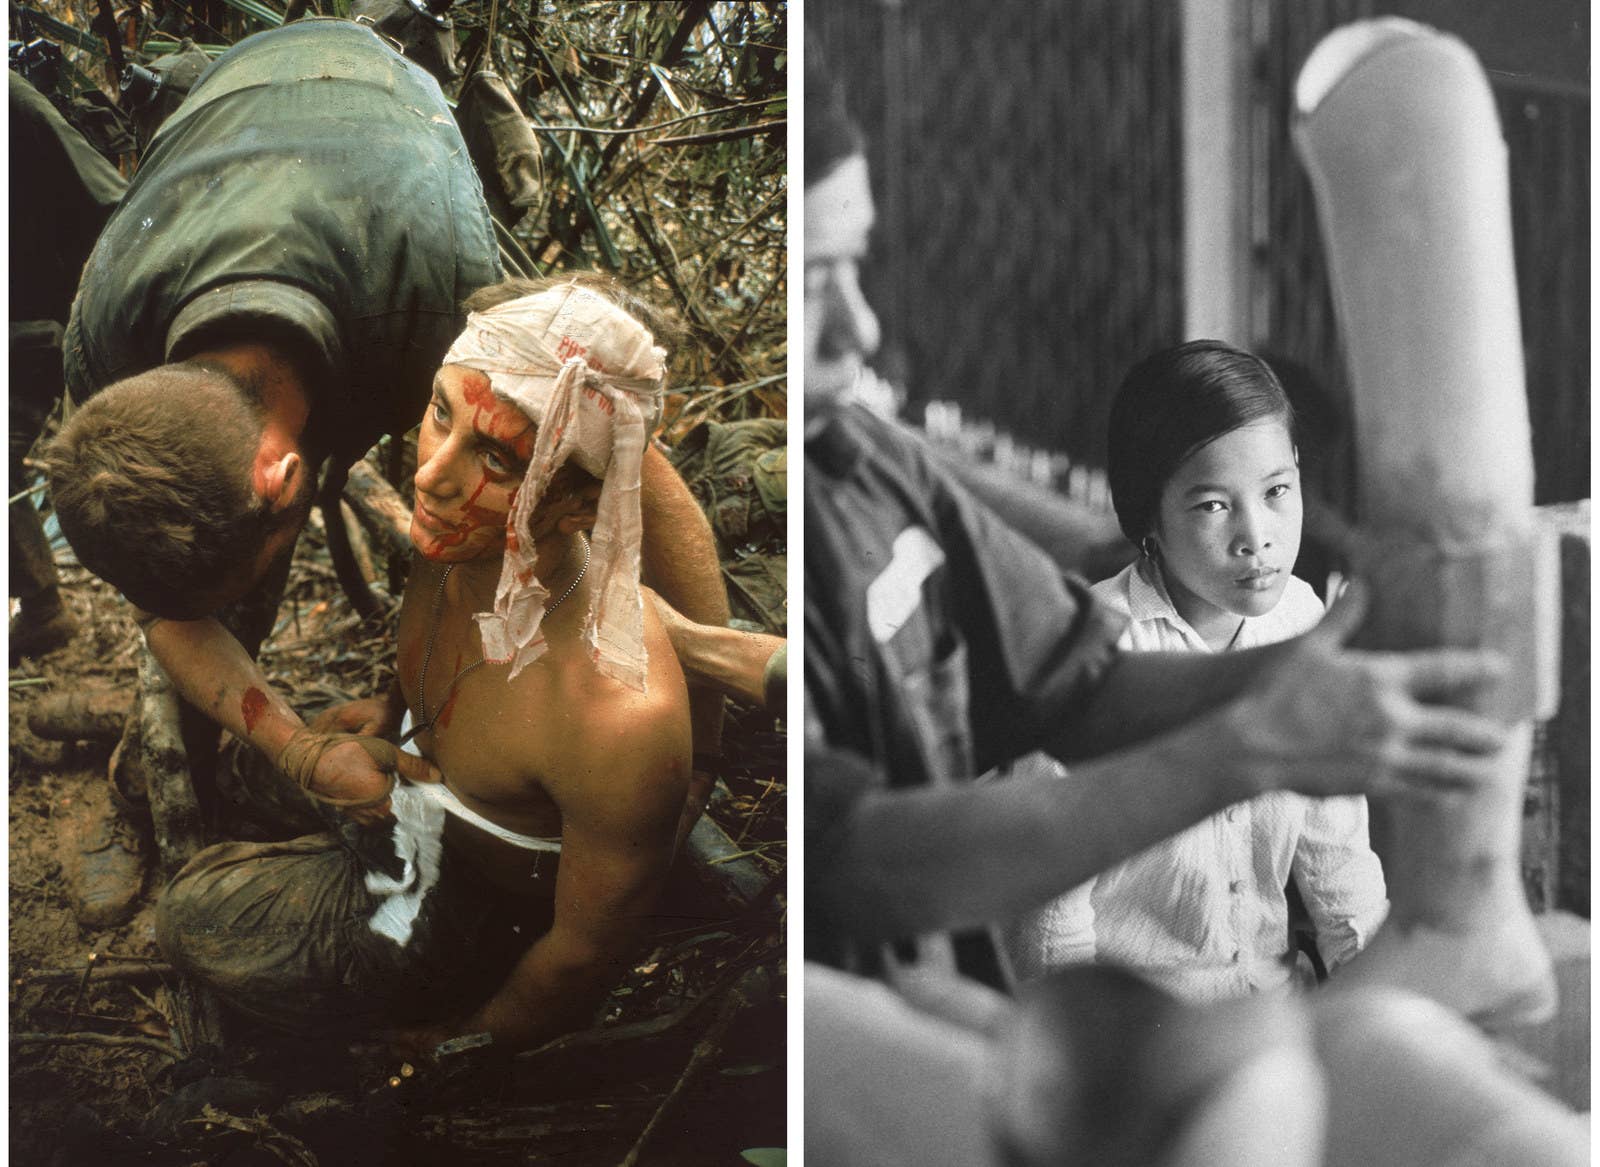 À esquerda, um combatente americano em estado de choque recebe atendimento durante a Operação Prairie. À direita, a jovem vietnamita Nguyen Thi Tron, que perdeu uma das pernas durante um ataque americano à sua vila, observa a prótese que estava sendo feita para ela.